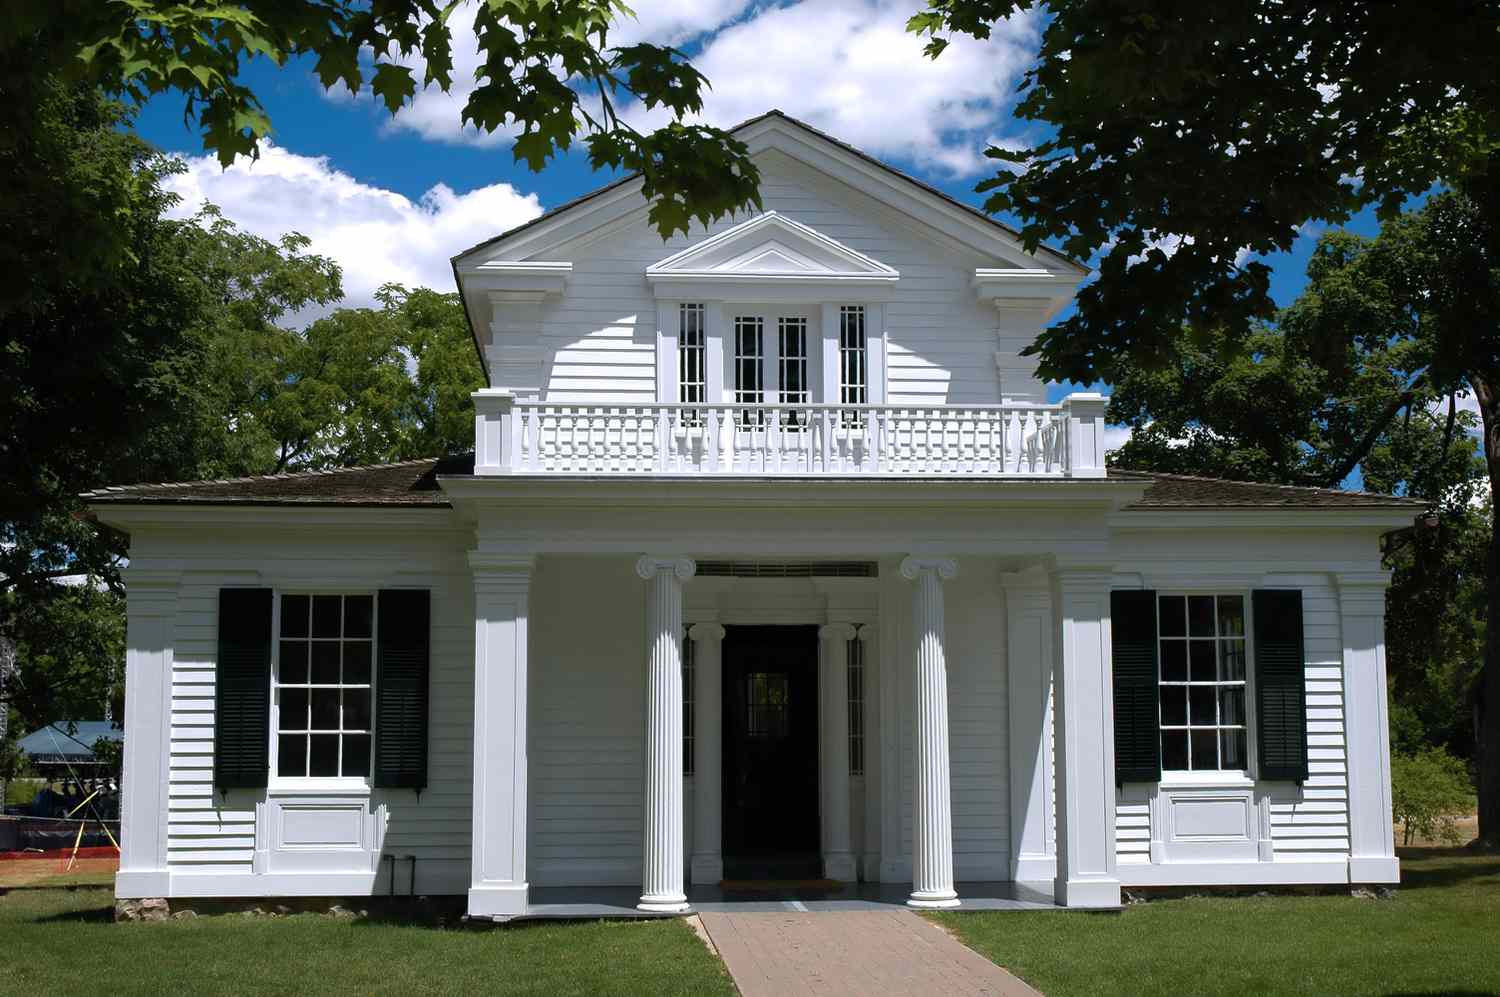 Casa de estilo renacimiento griego en Greenfield Village, Michigan.